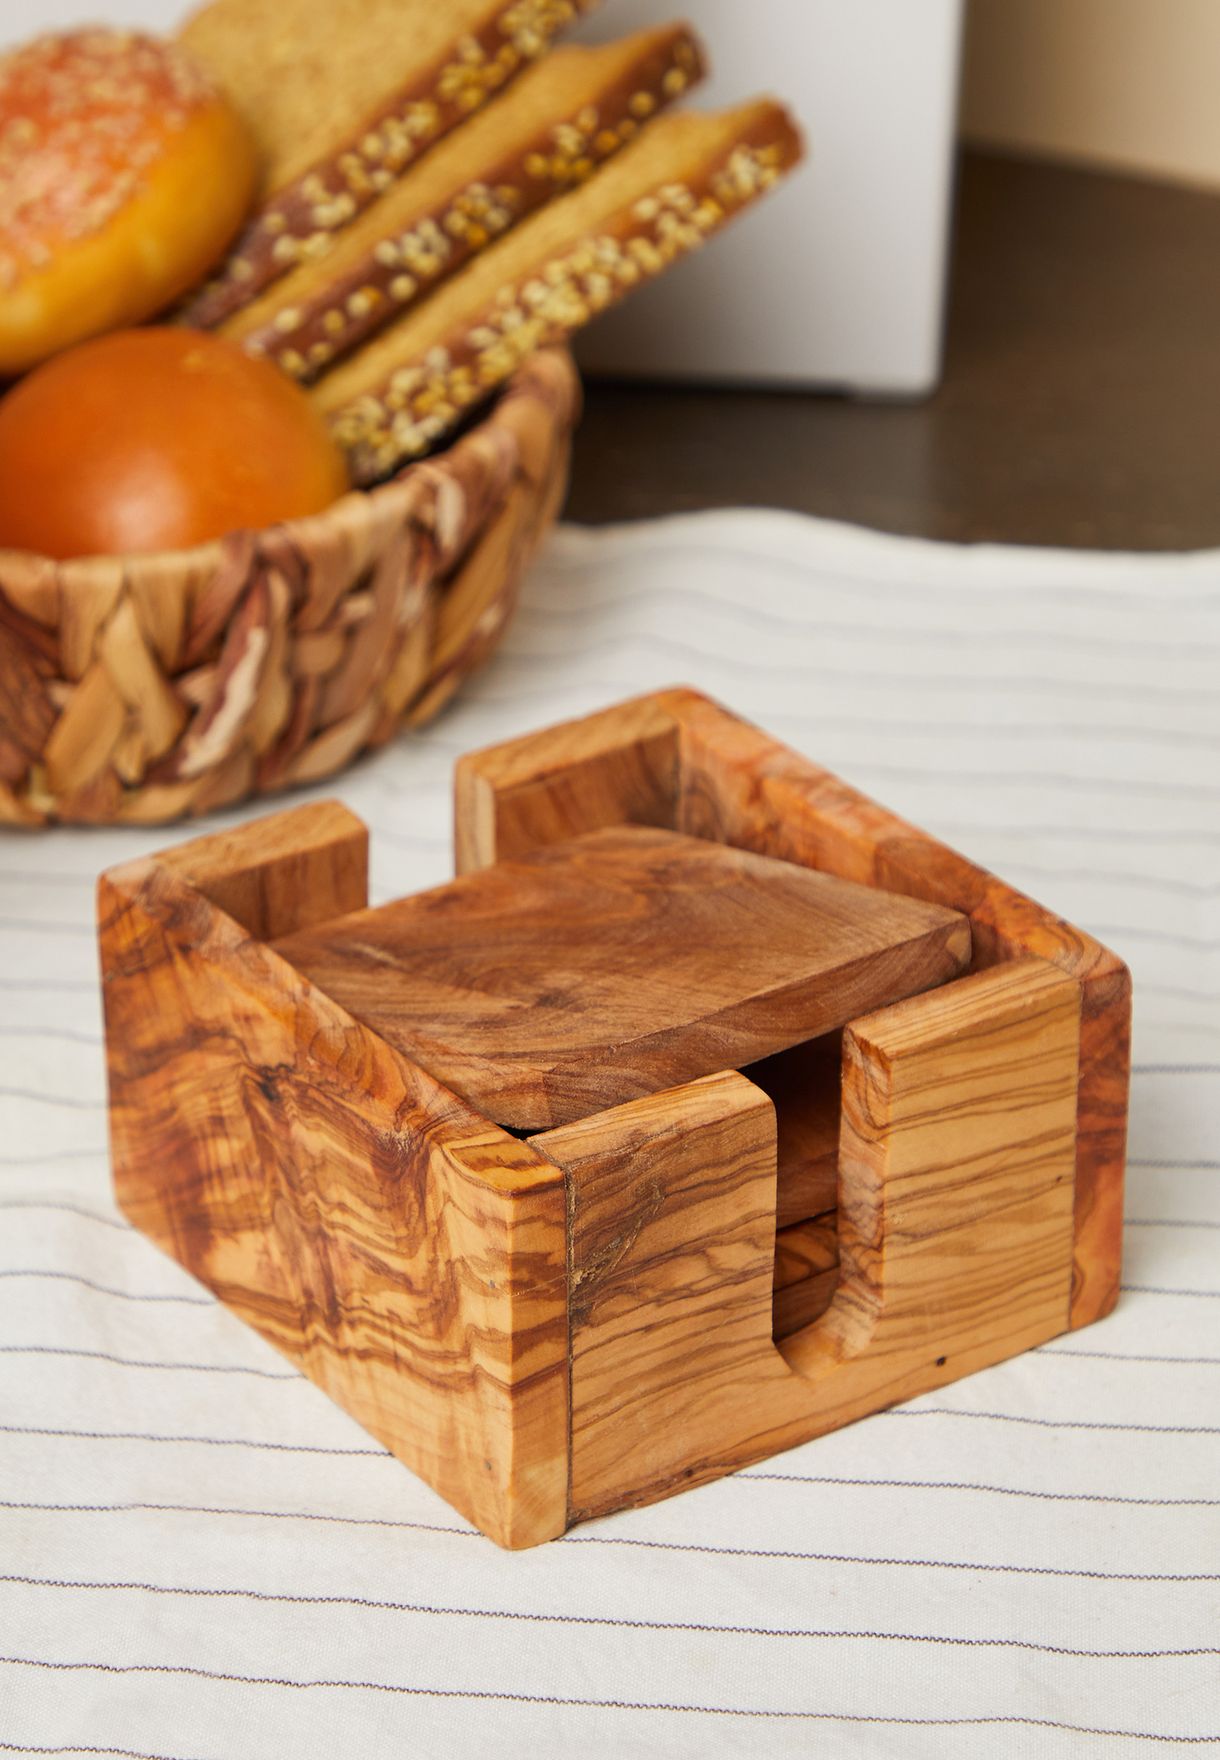 Kora Set Of 4 Olive Wood Coasters With Holder